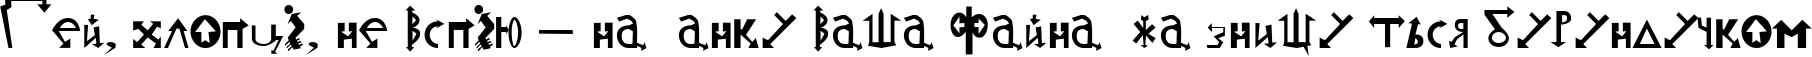 Пример написания шрифтом StrelochnikC текста на украинском